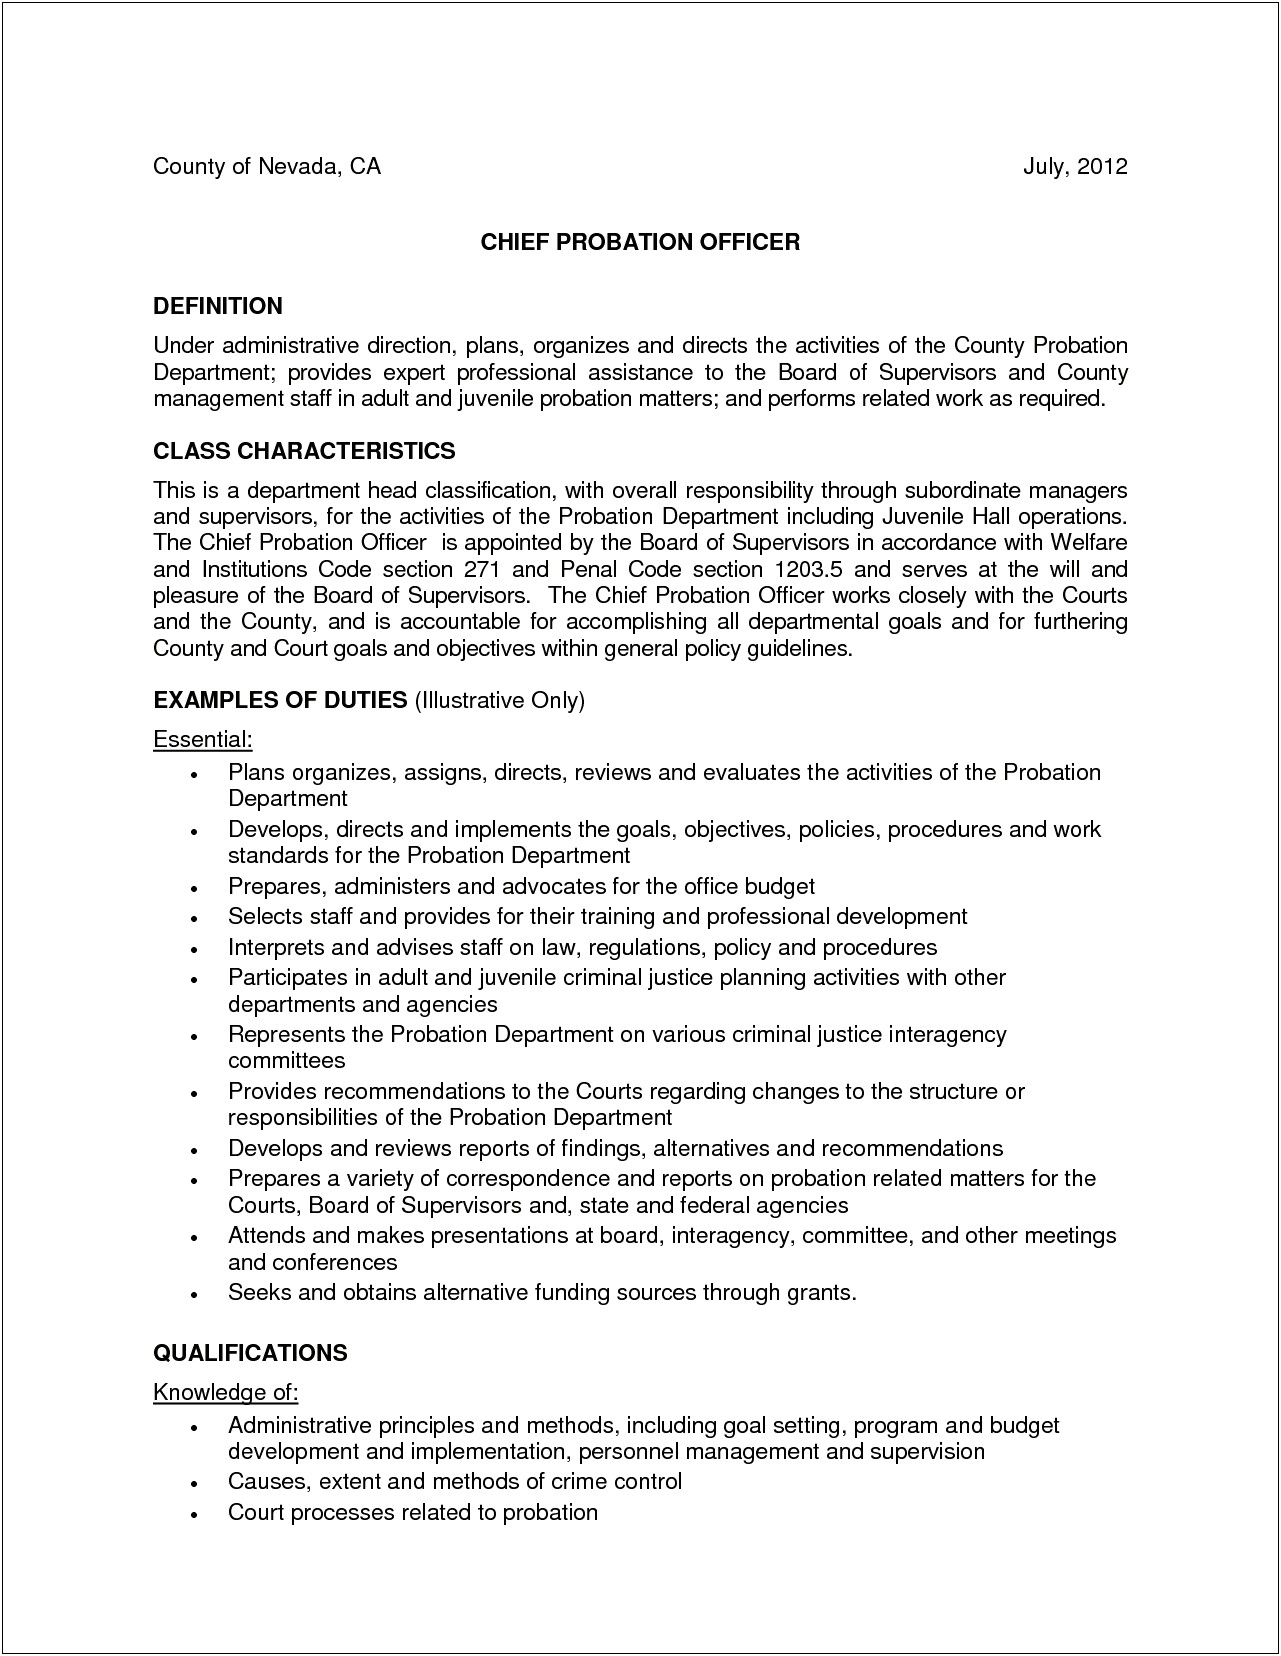 Resume Objective For Juvenile Probation Officer